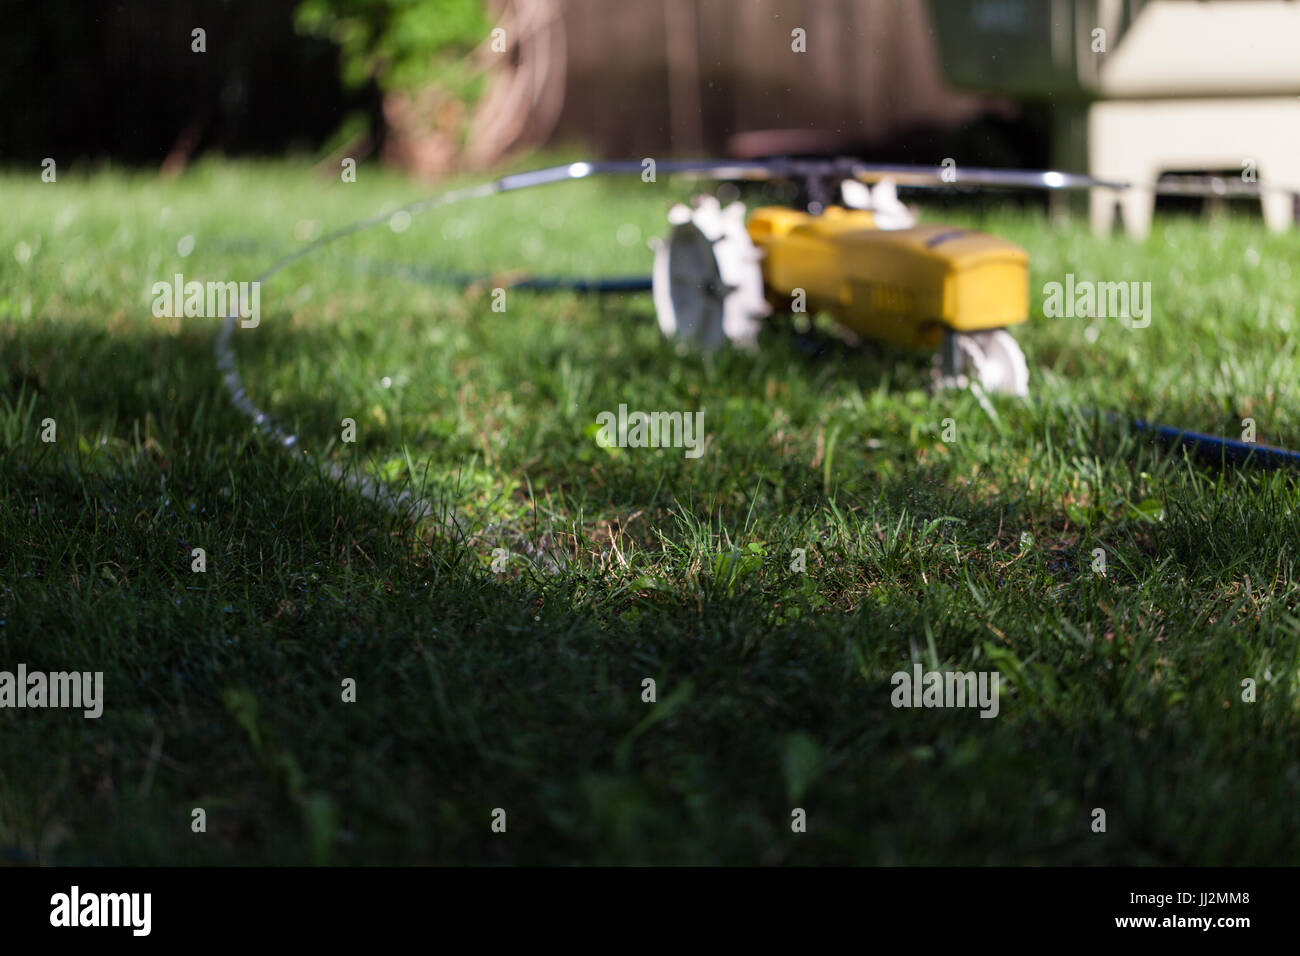 Nelson lawn sprinkler Stock Photo